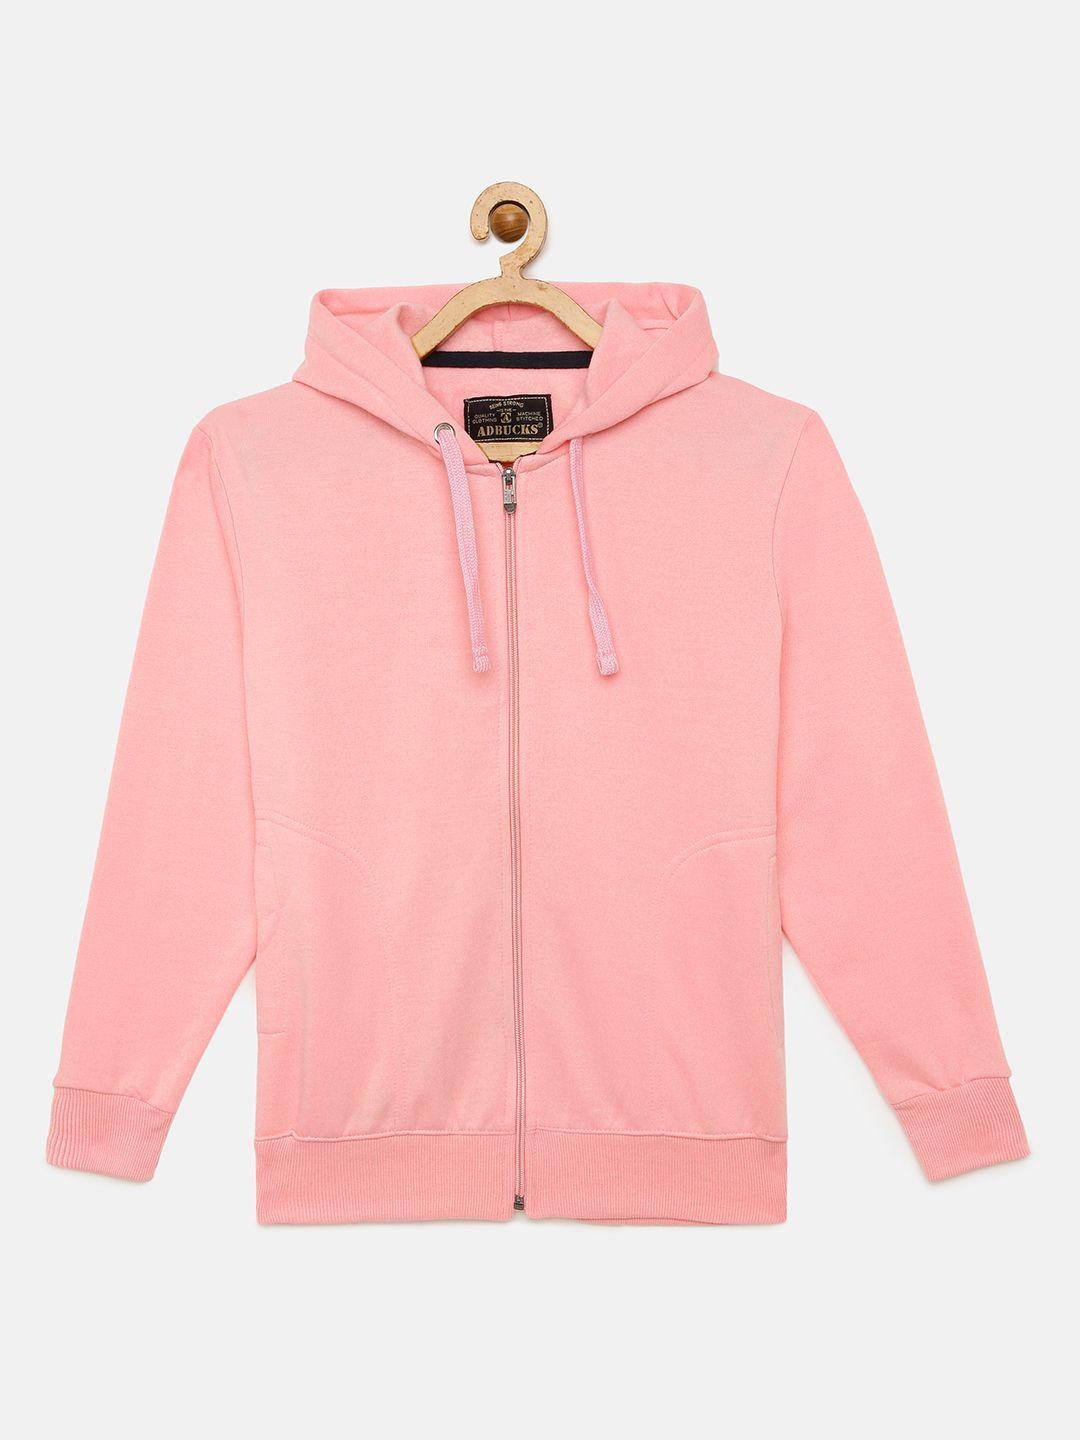 adbucks boys pink solid hooded sweatshirt